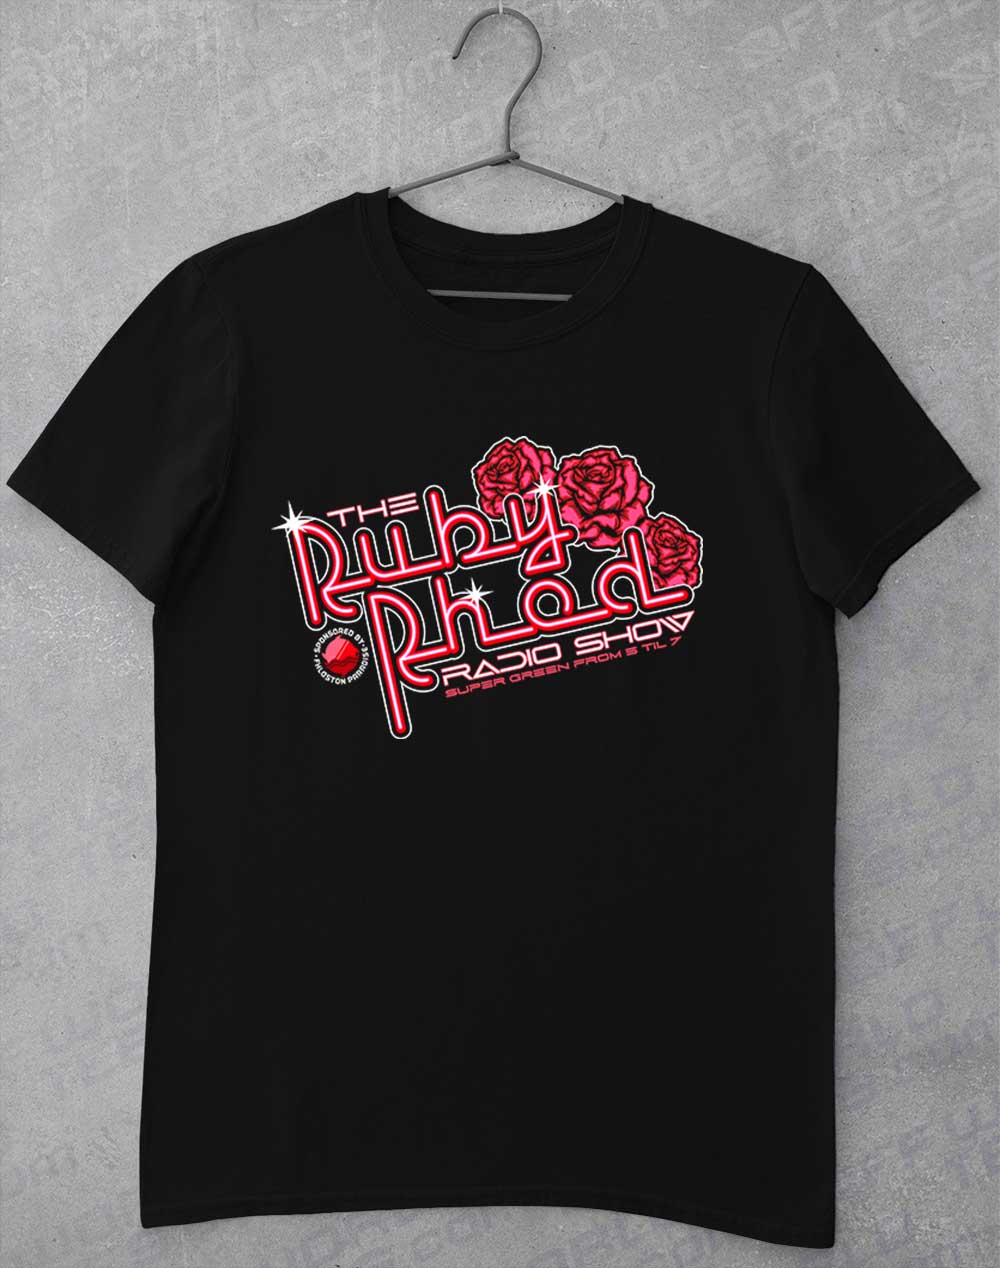 Black - Ruby Rhod Radio Show T-Shirt